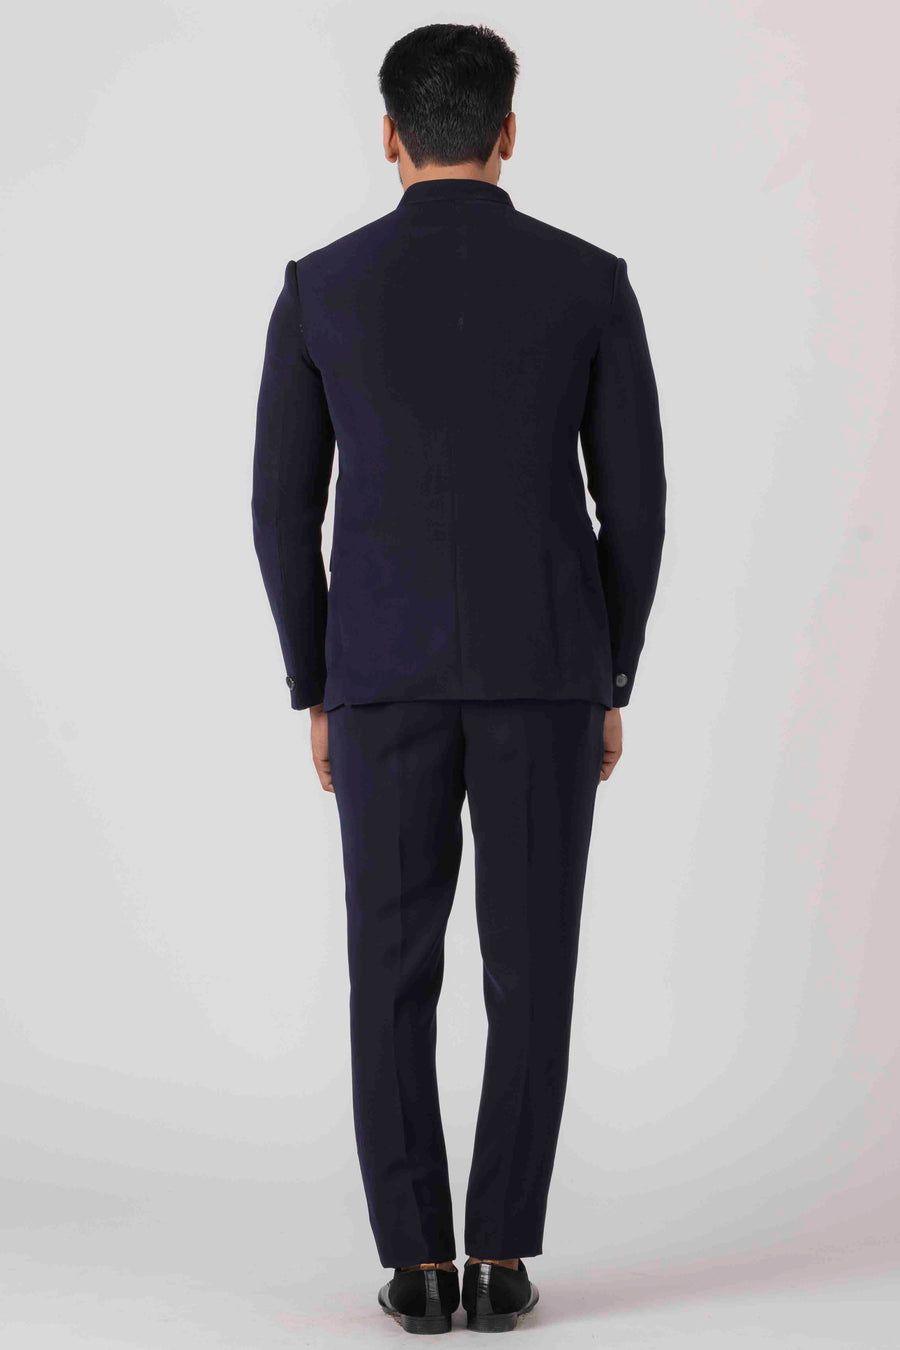 MLS Multi Layer Jodhpuri Suit 3Pcs